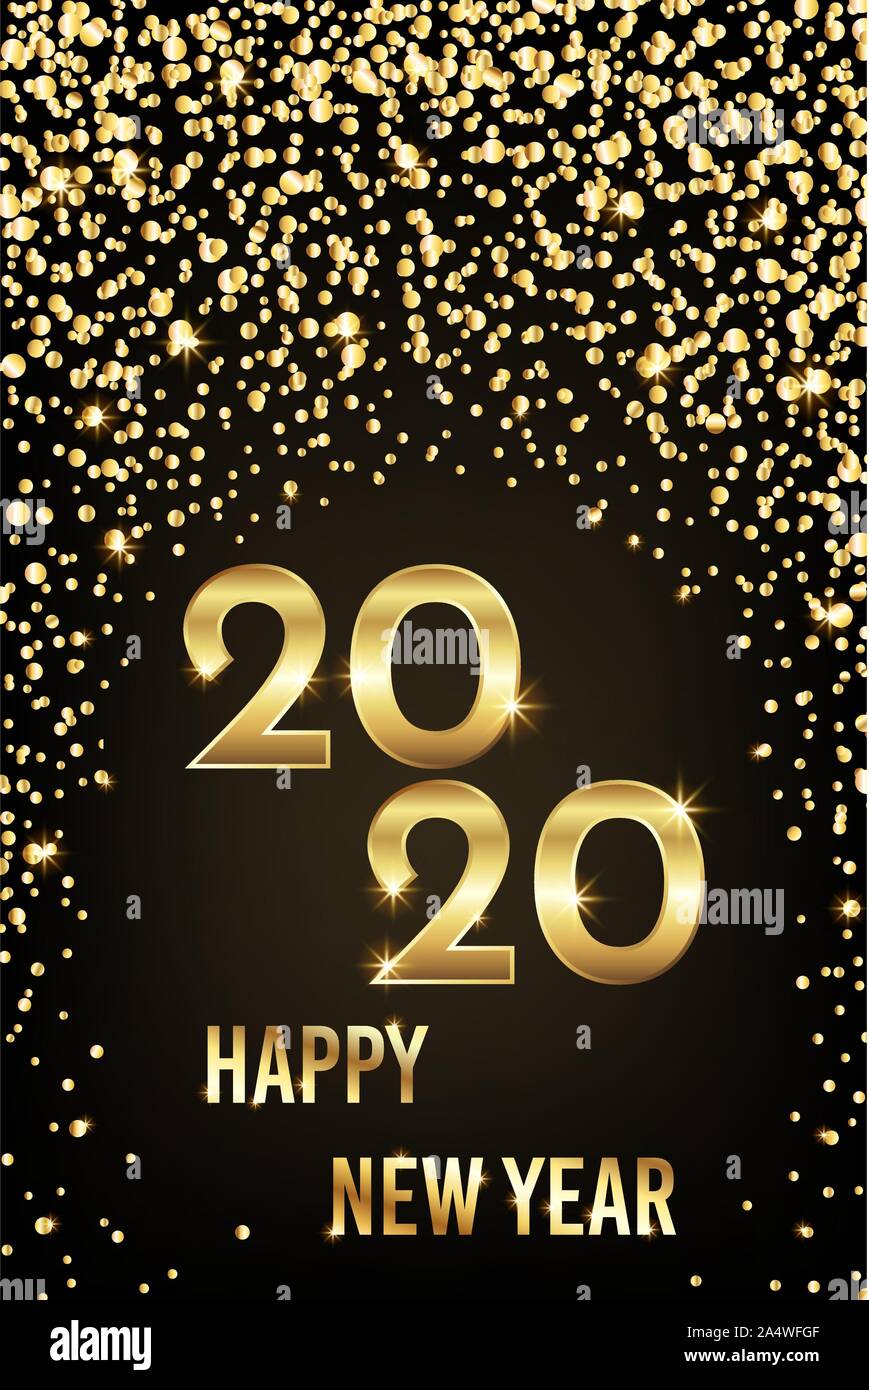 2020 felice anno nuovo congratulazioni con brillantini dorati e testo Illustrazione Vettoriale